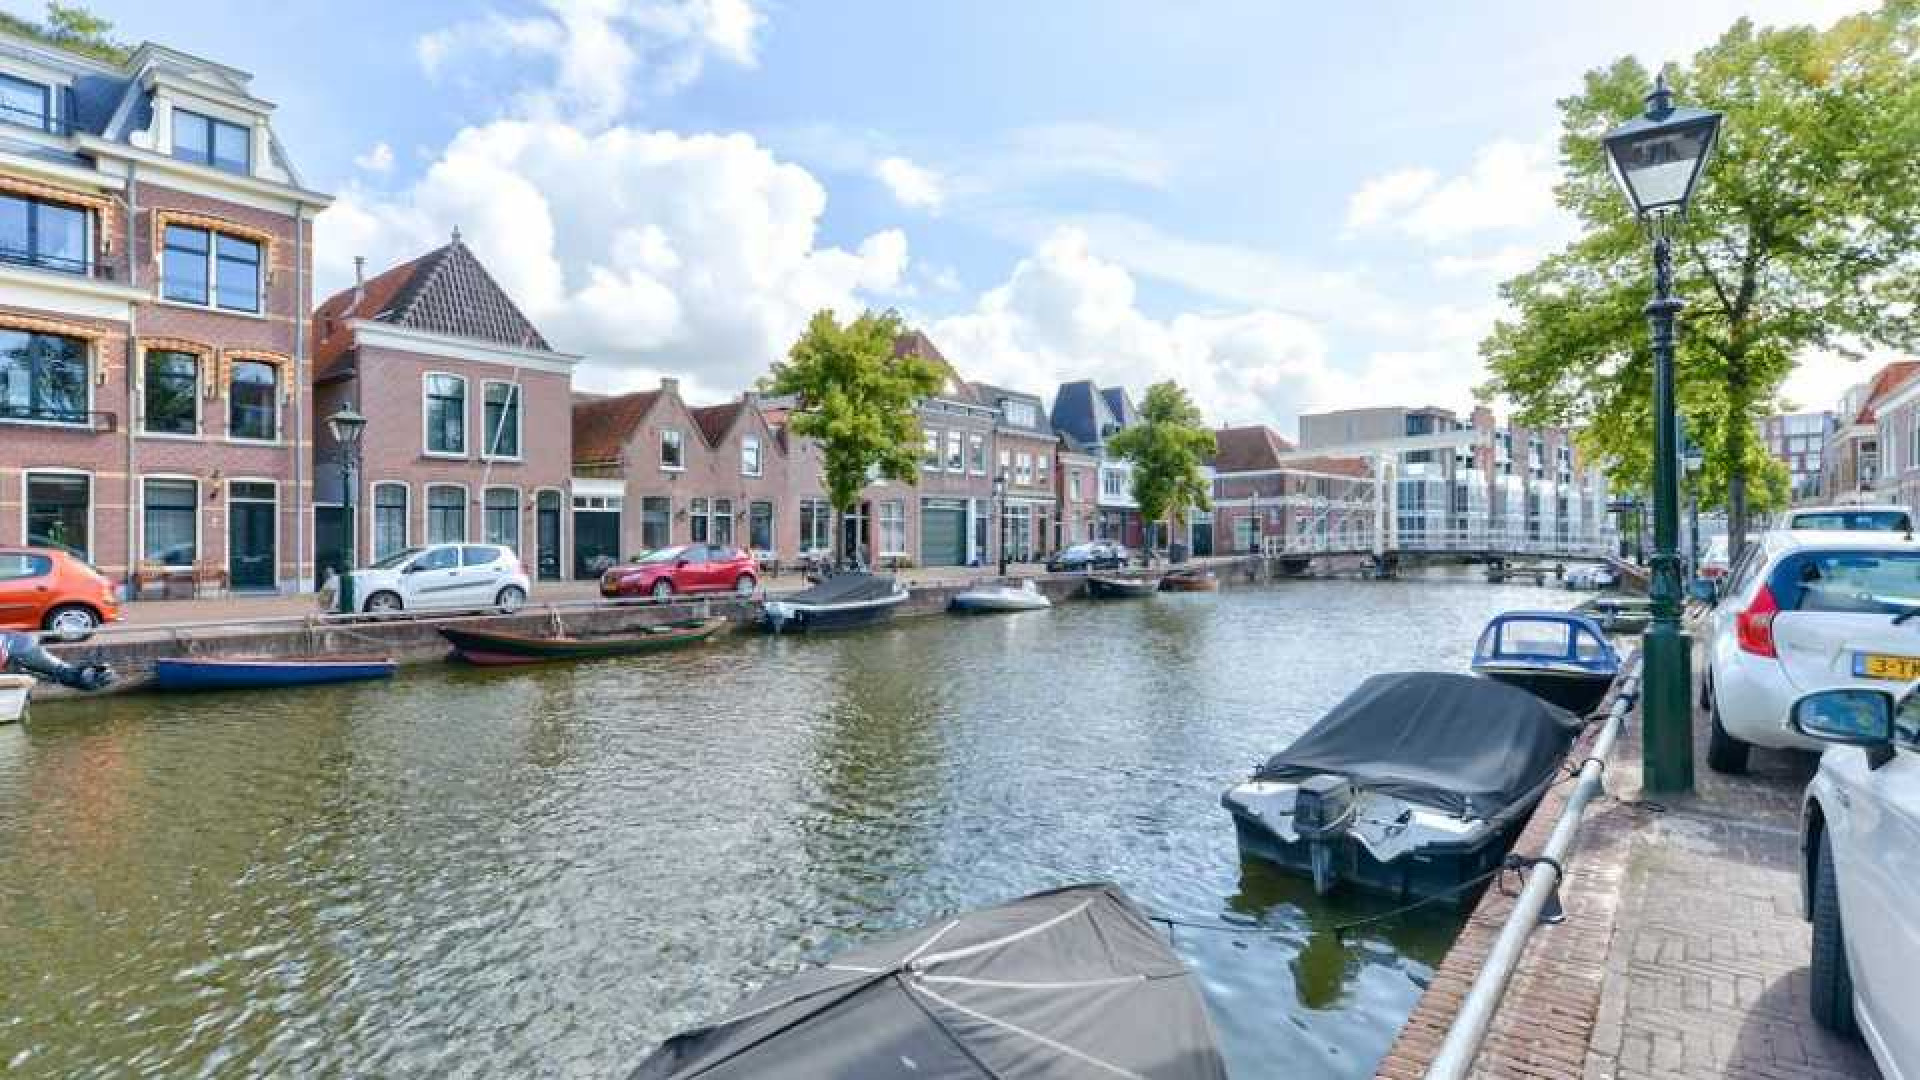 Wesley Hoedt van Lazio Roma koopt luxe appartement in Alkmaar. Zie foto's